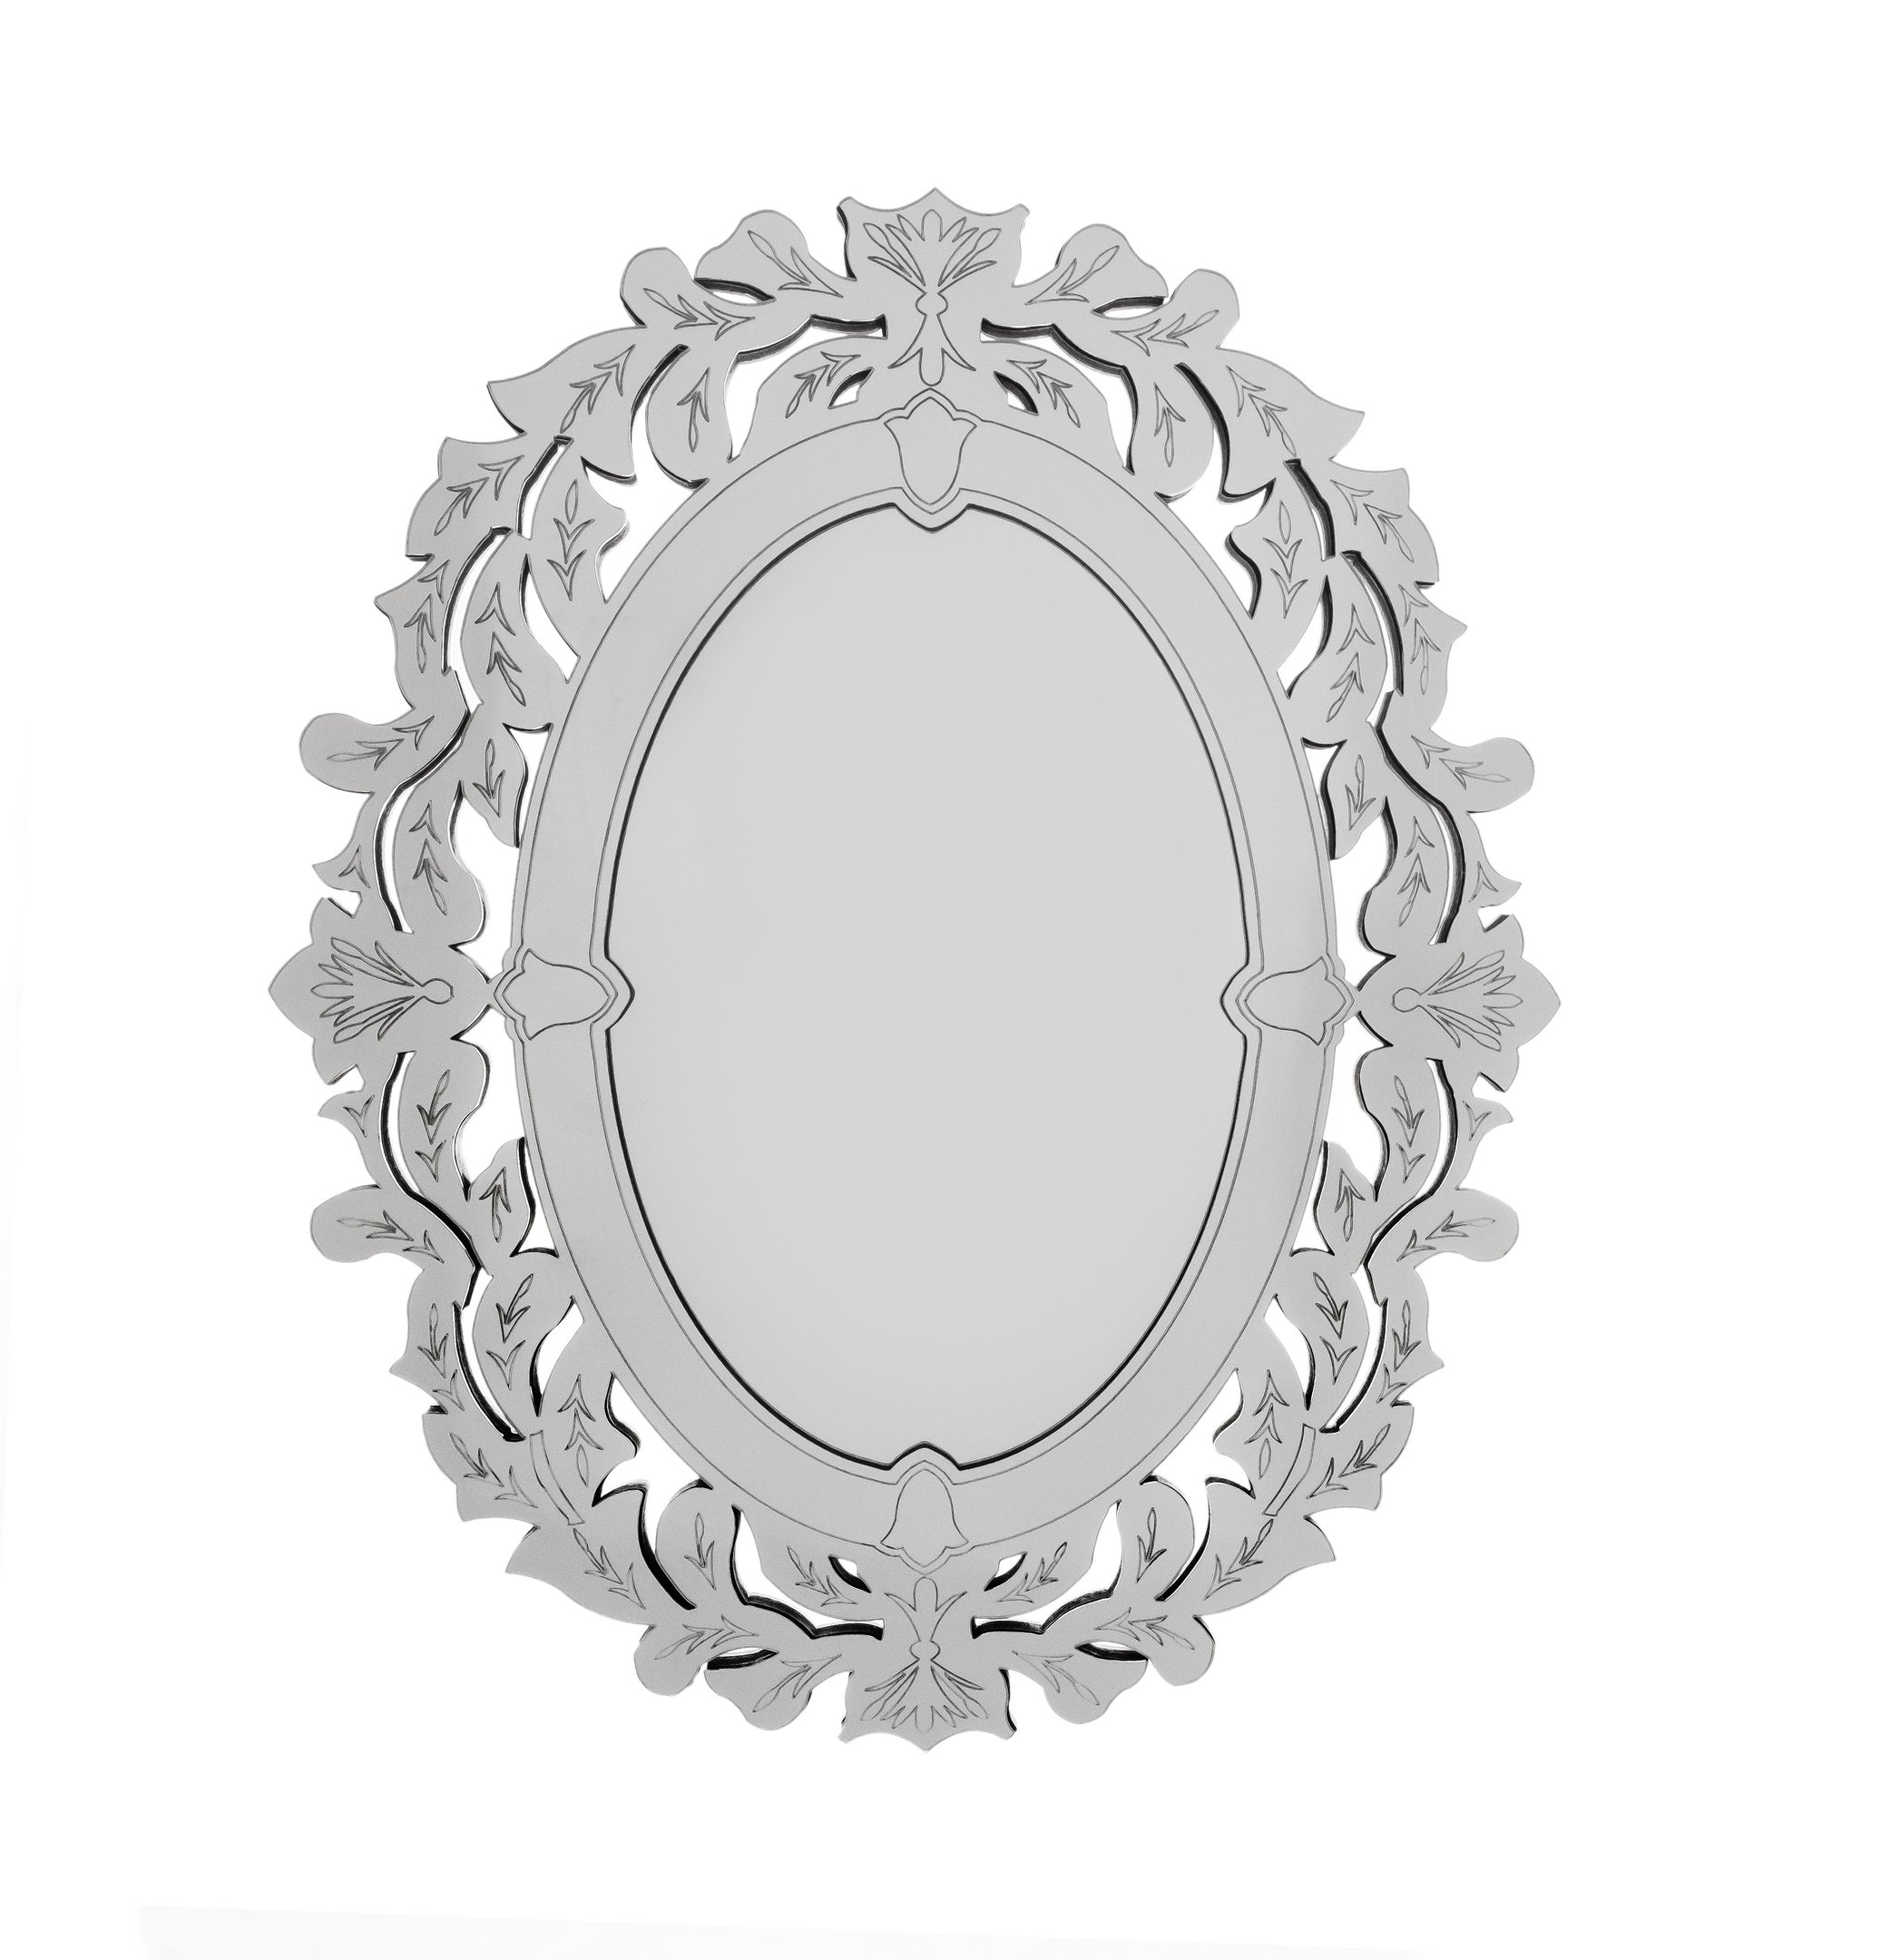 Espelho veneziano Provençal Decorativo 45x65 3882:prata - 1